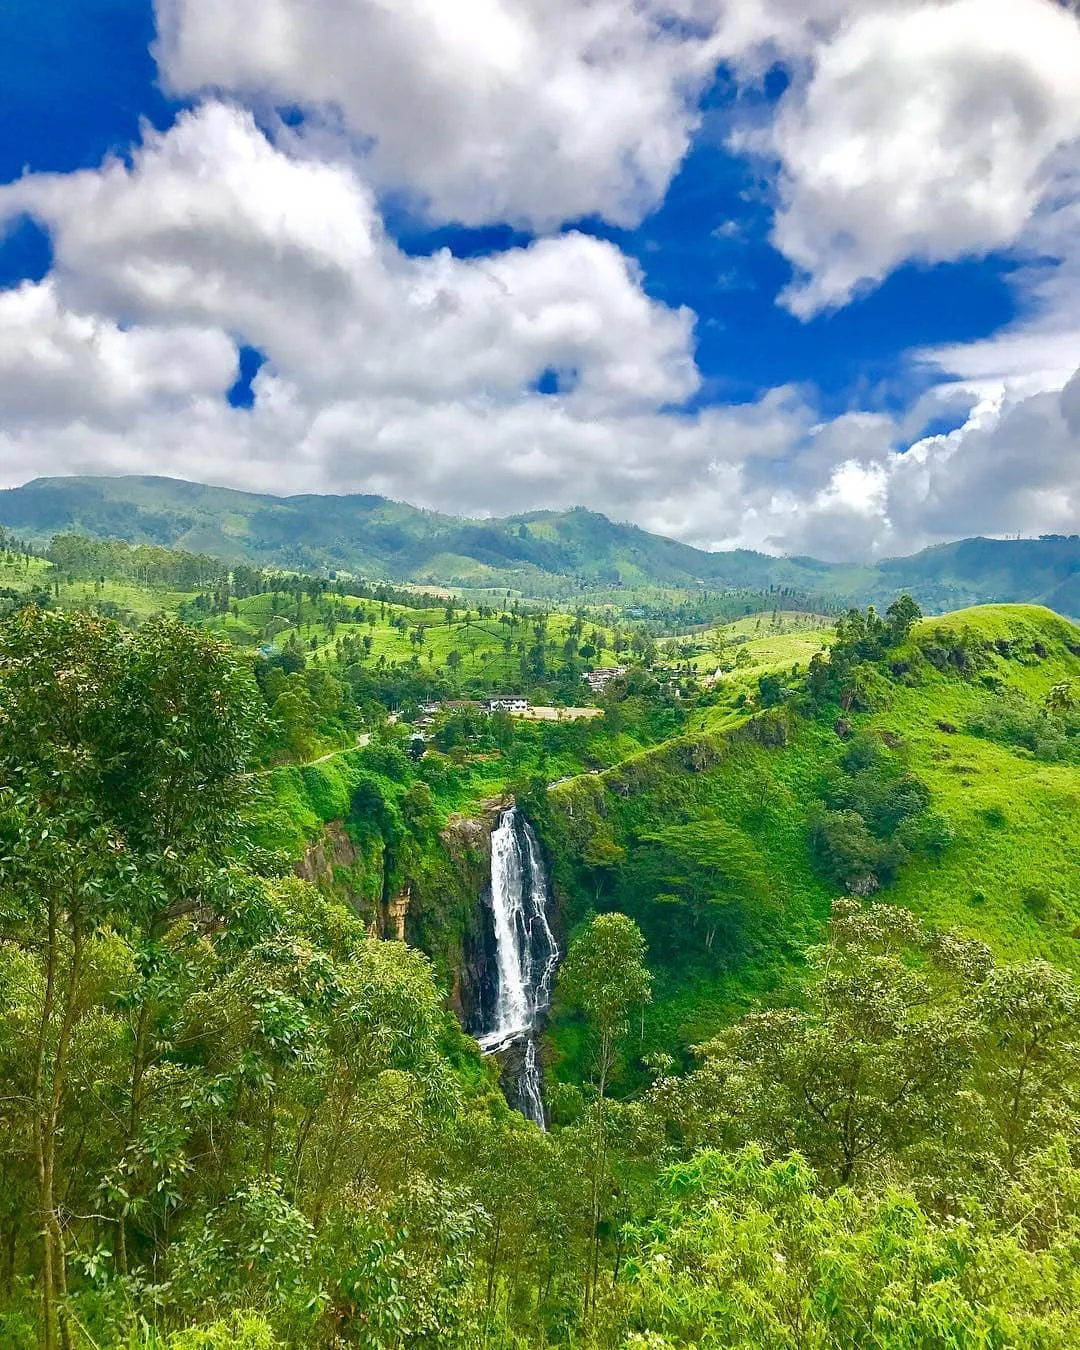 View of Devon Falls in Nuwara Eliya